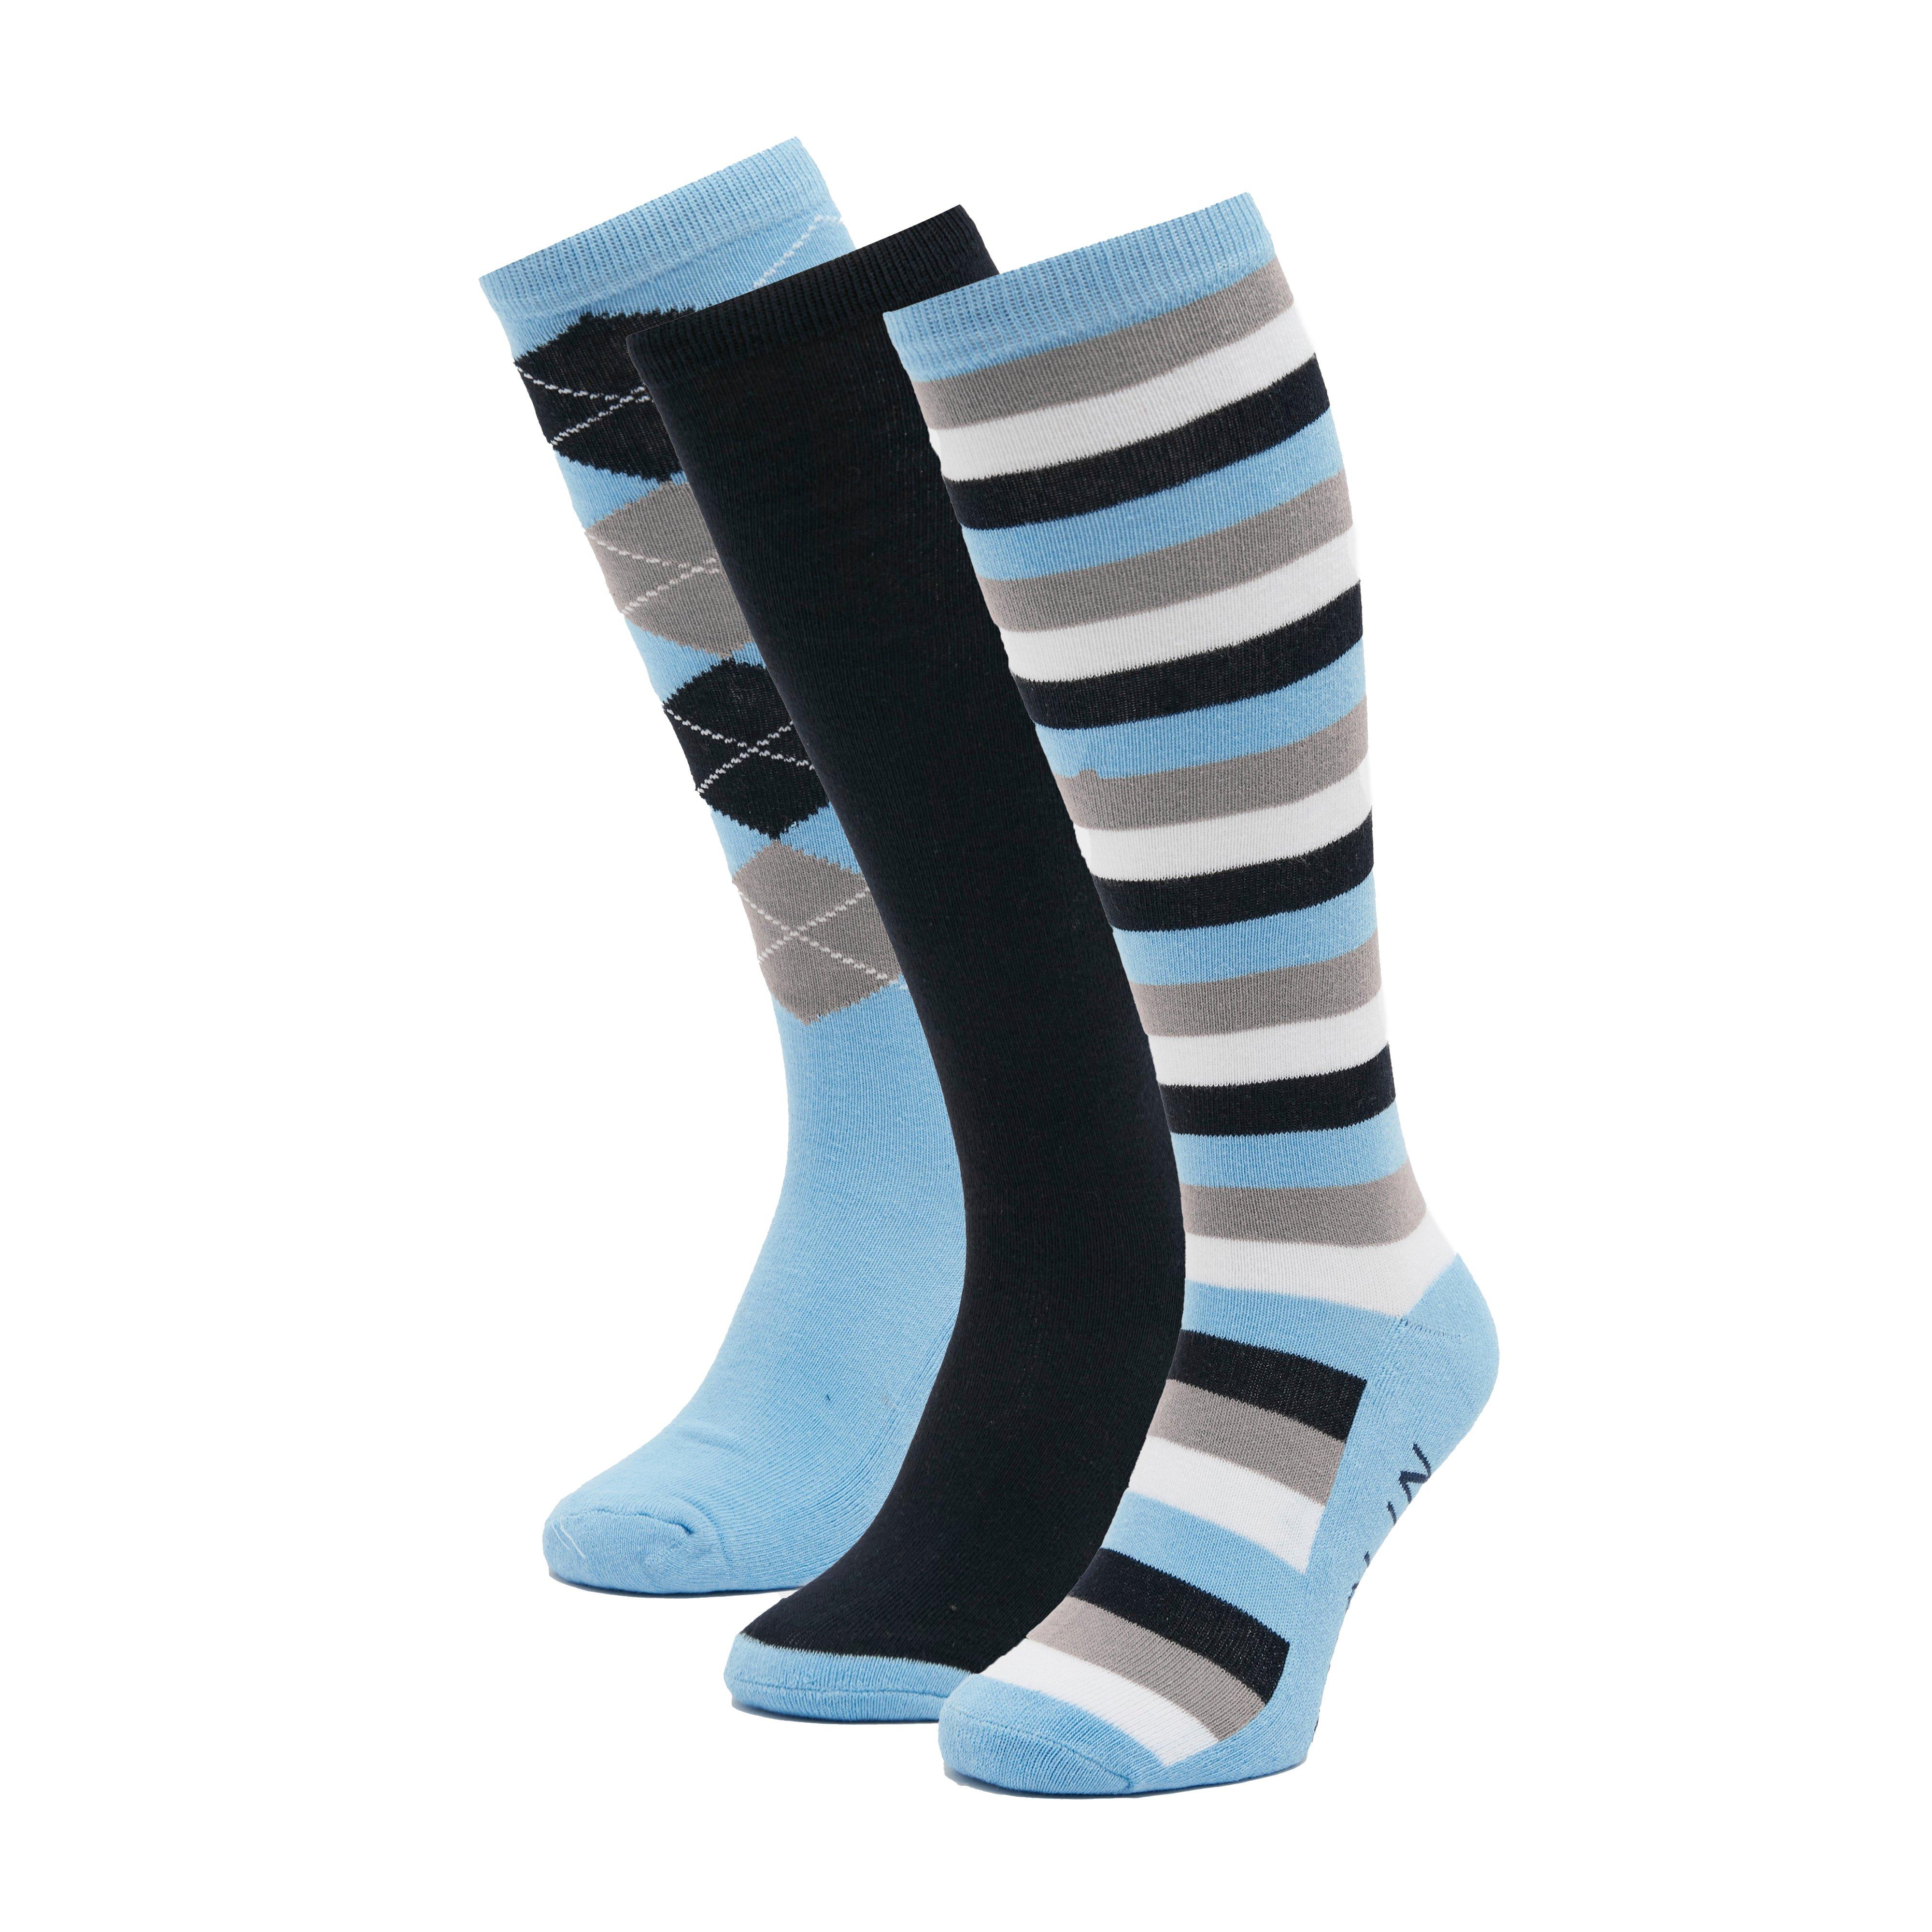 Socks Pack of 3 Light Blue/Navy/Grey